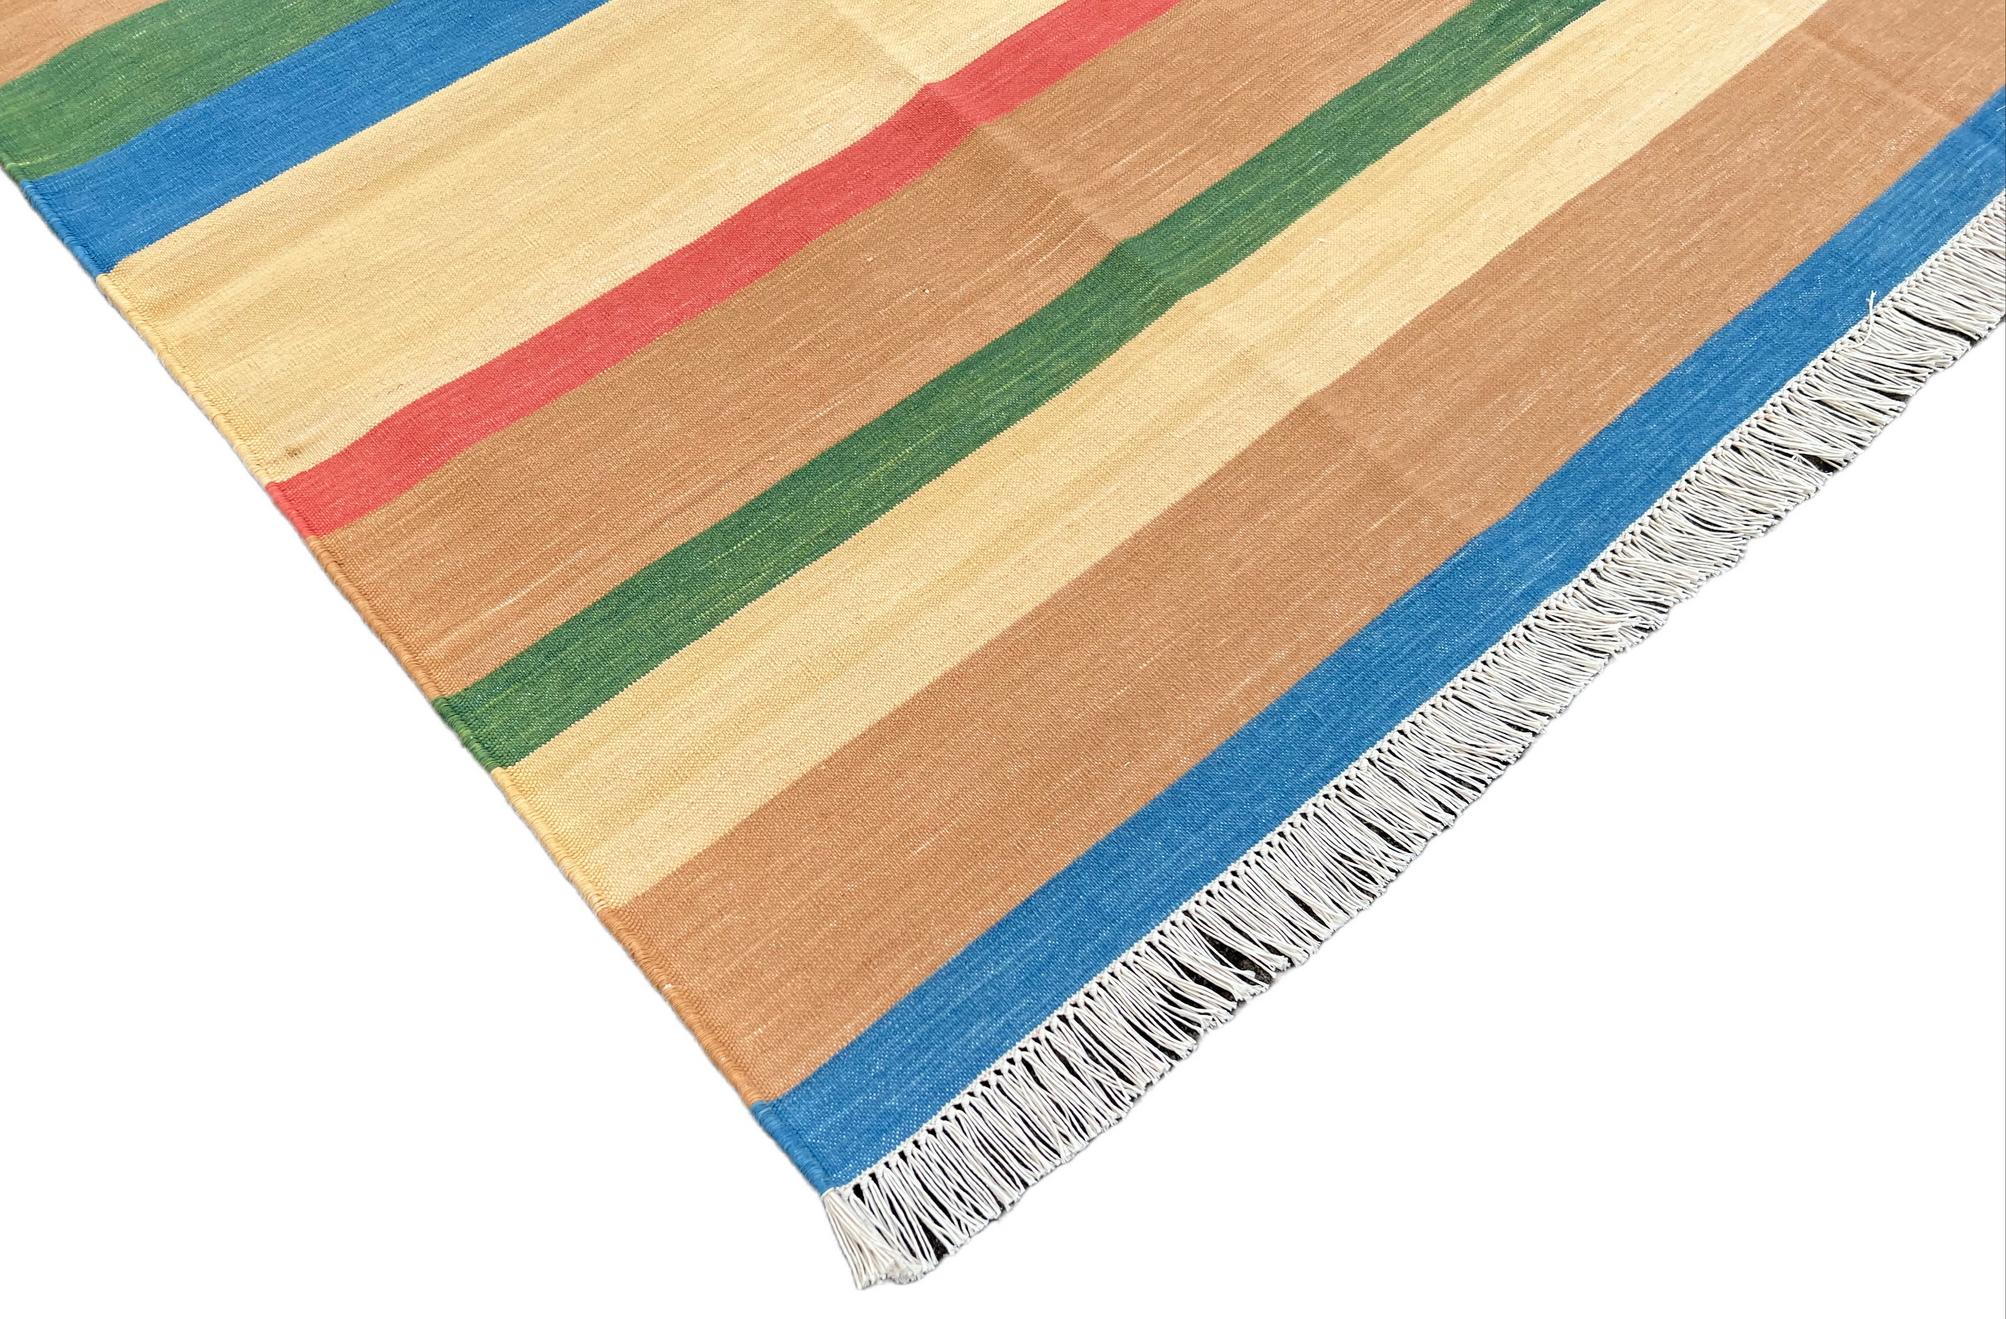 Baumwolle pflanzlich gefärbt Tan, Blau, Grün und Creme gestreiften indischen Dhurrie Teppich-6'x9' 
Diese speziellen flachgewebten Dhurries werden aus 15-fachem Garn aus 100% Baumwolle handgewebt. Aufgrund der speziellen Fertigungstechniken, die zur